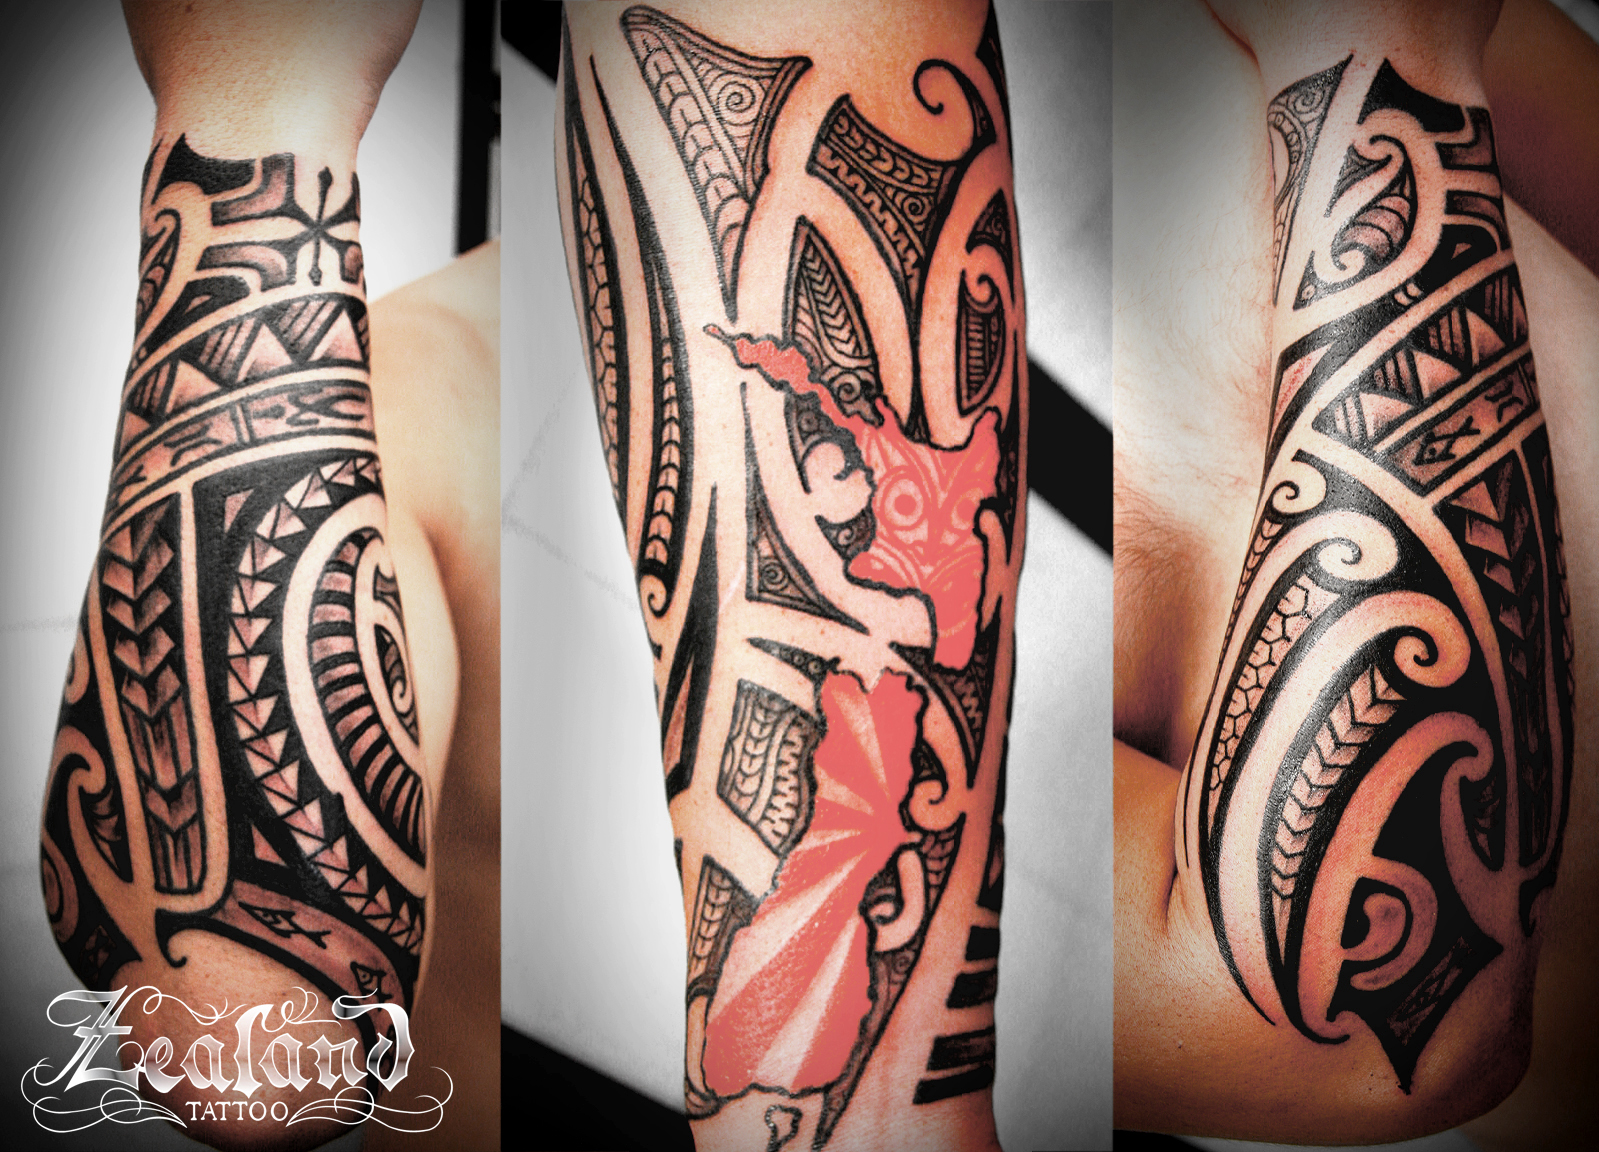 Kiwiana New Zealand Map Tattoo - Zealand Tattoo